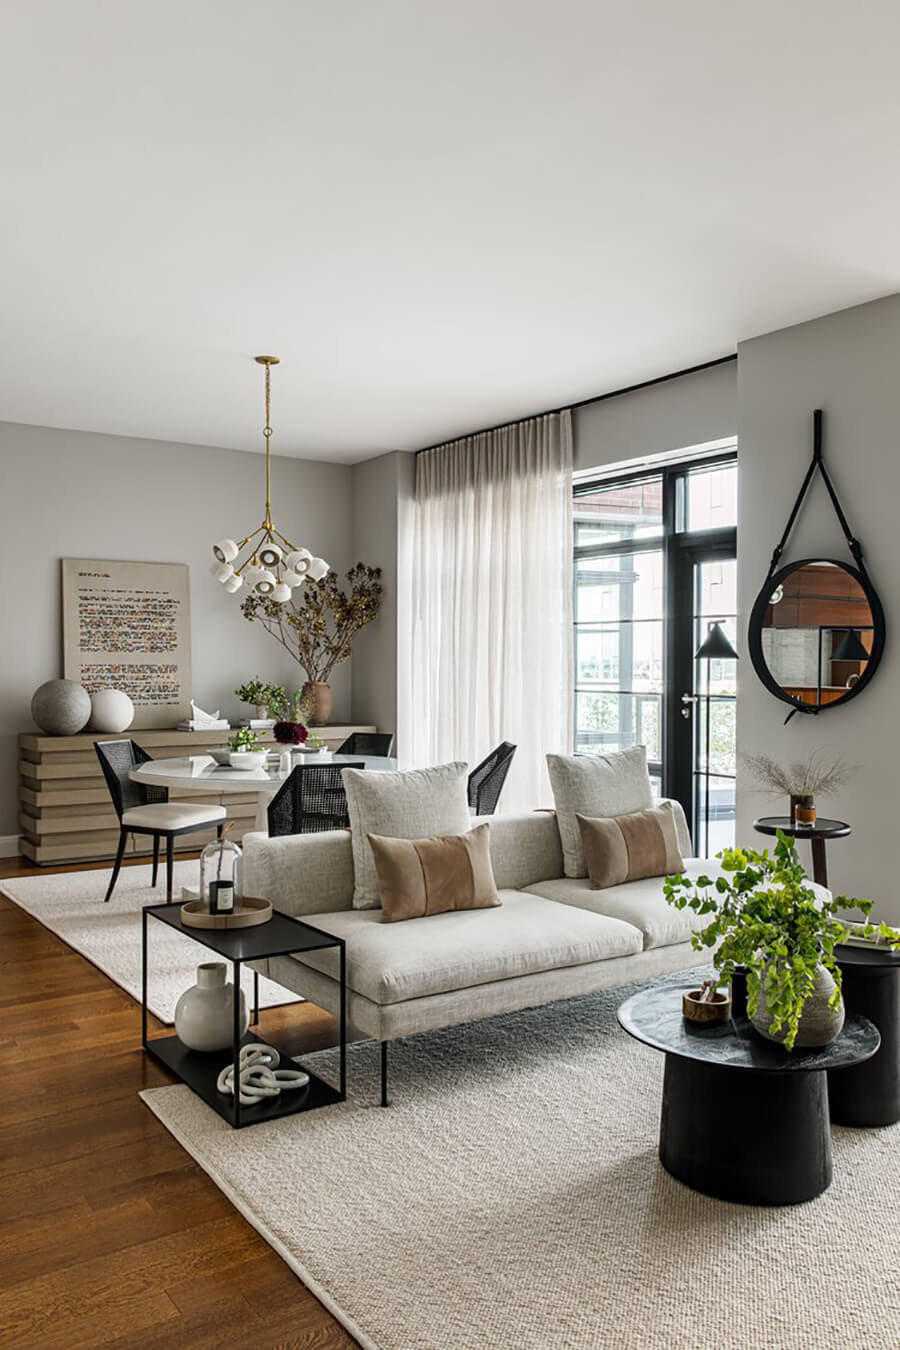 Un living comedor con contraste entre colores claros y negros, con un sofá puesto como separador de ambientes